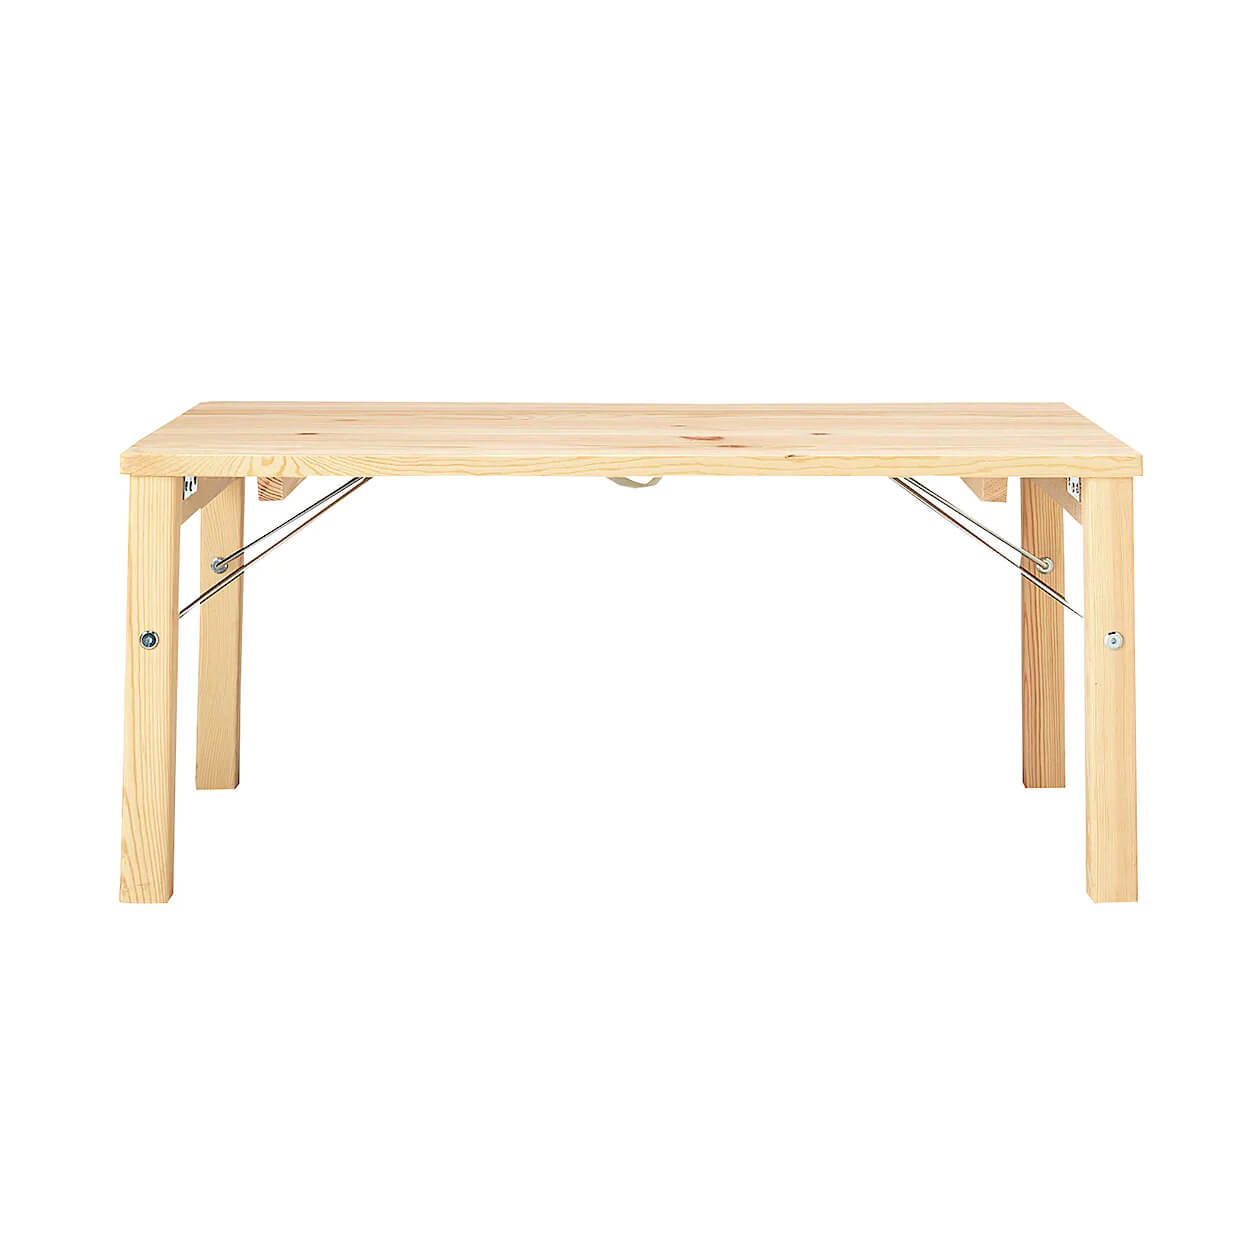 和室に合うおしゃれなテーブル⑤『無印良品 パイン材ローテーブル・折りたたみ式』